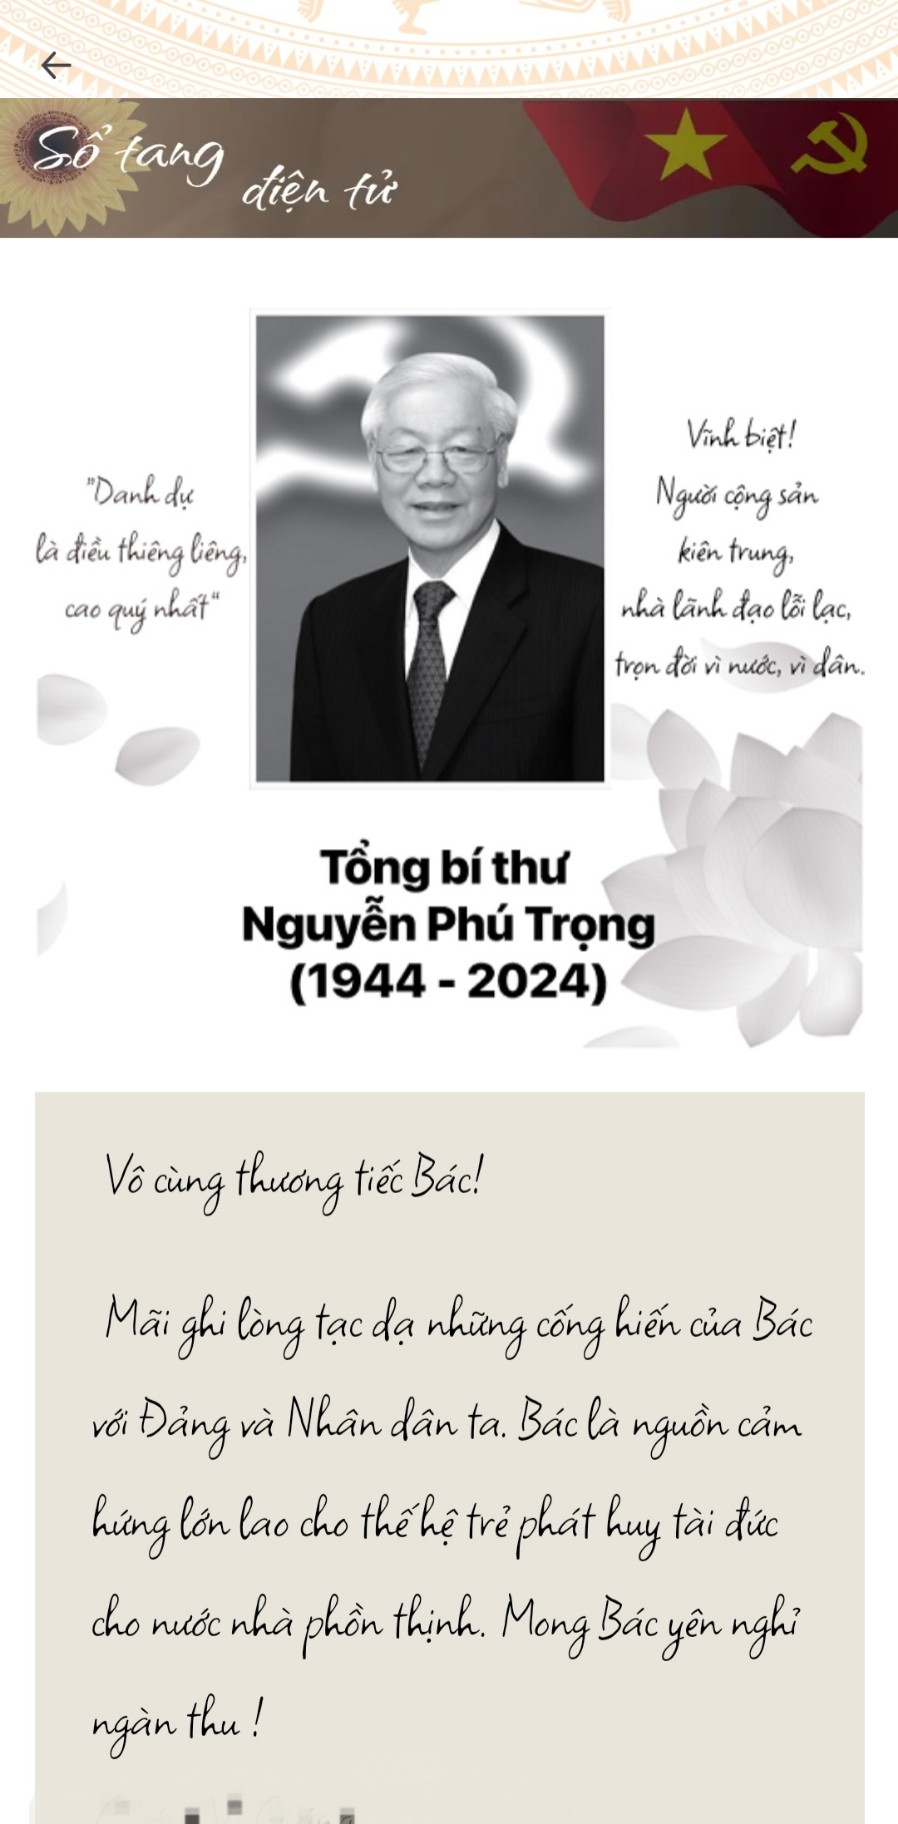 VNeID cập nhật tính năng “Sổ tang điện tử” giúp người dân gửi lời chia buồn, tưởng nhớ Tổng Bí thư Nguyễn Phú Trọng